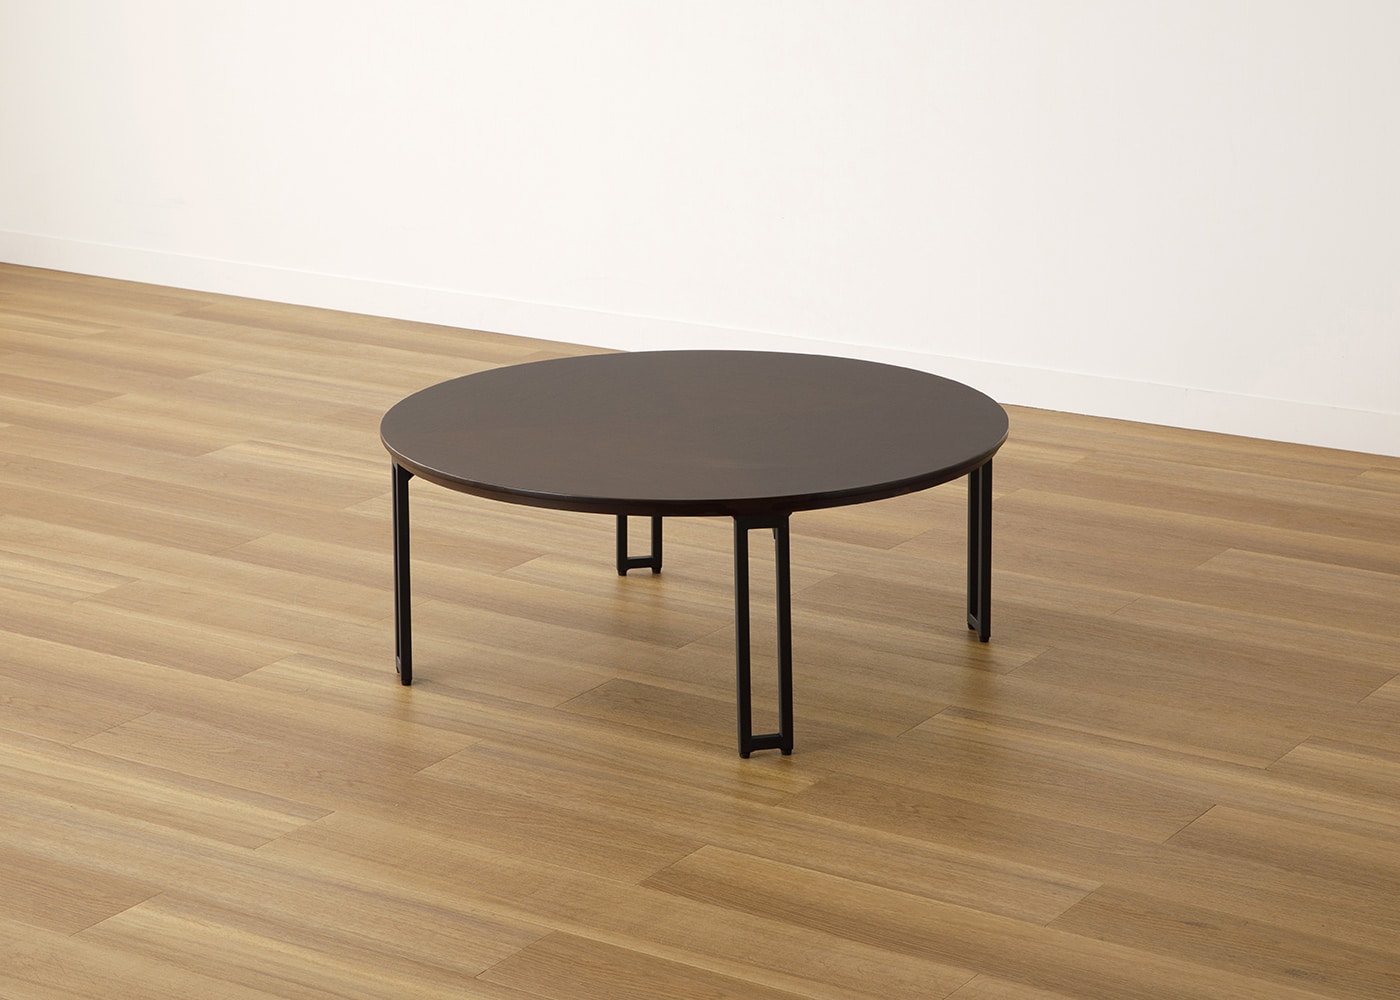 ラウンド・ローテーブルセット 座椅子2脚～和モダンデザインの丸い円形 